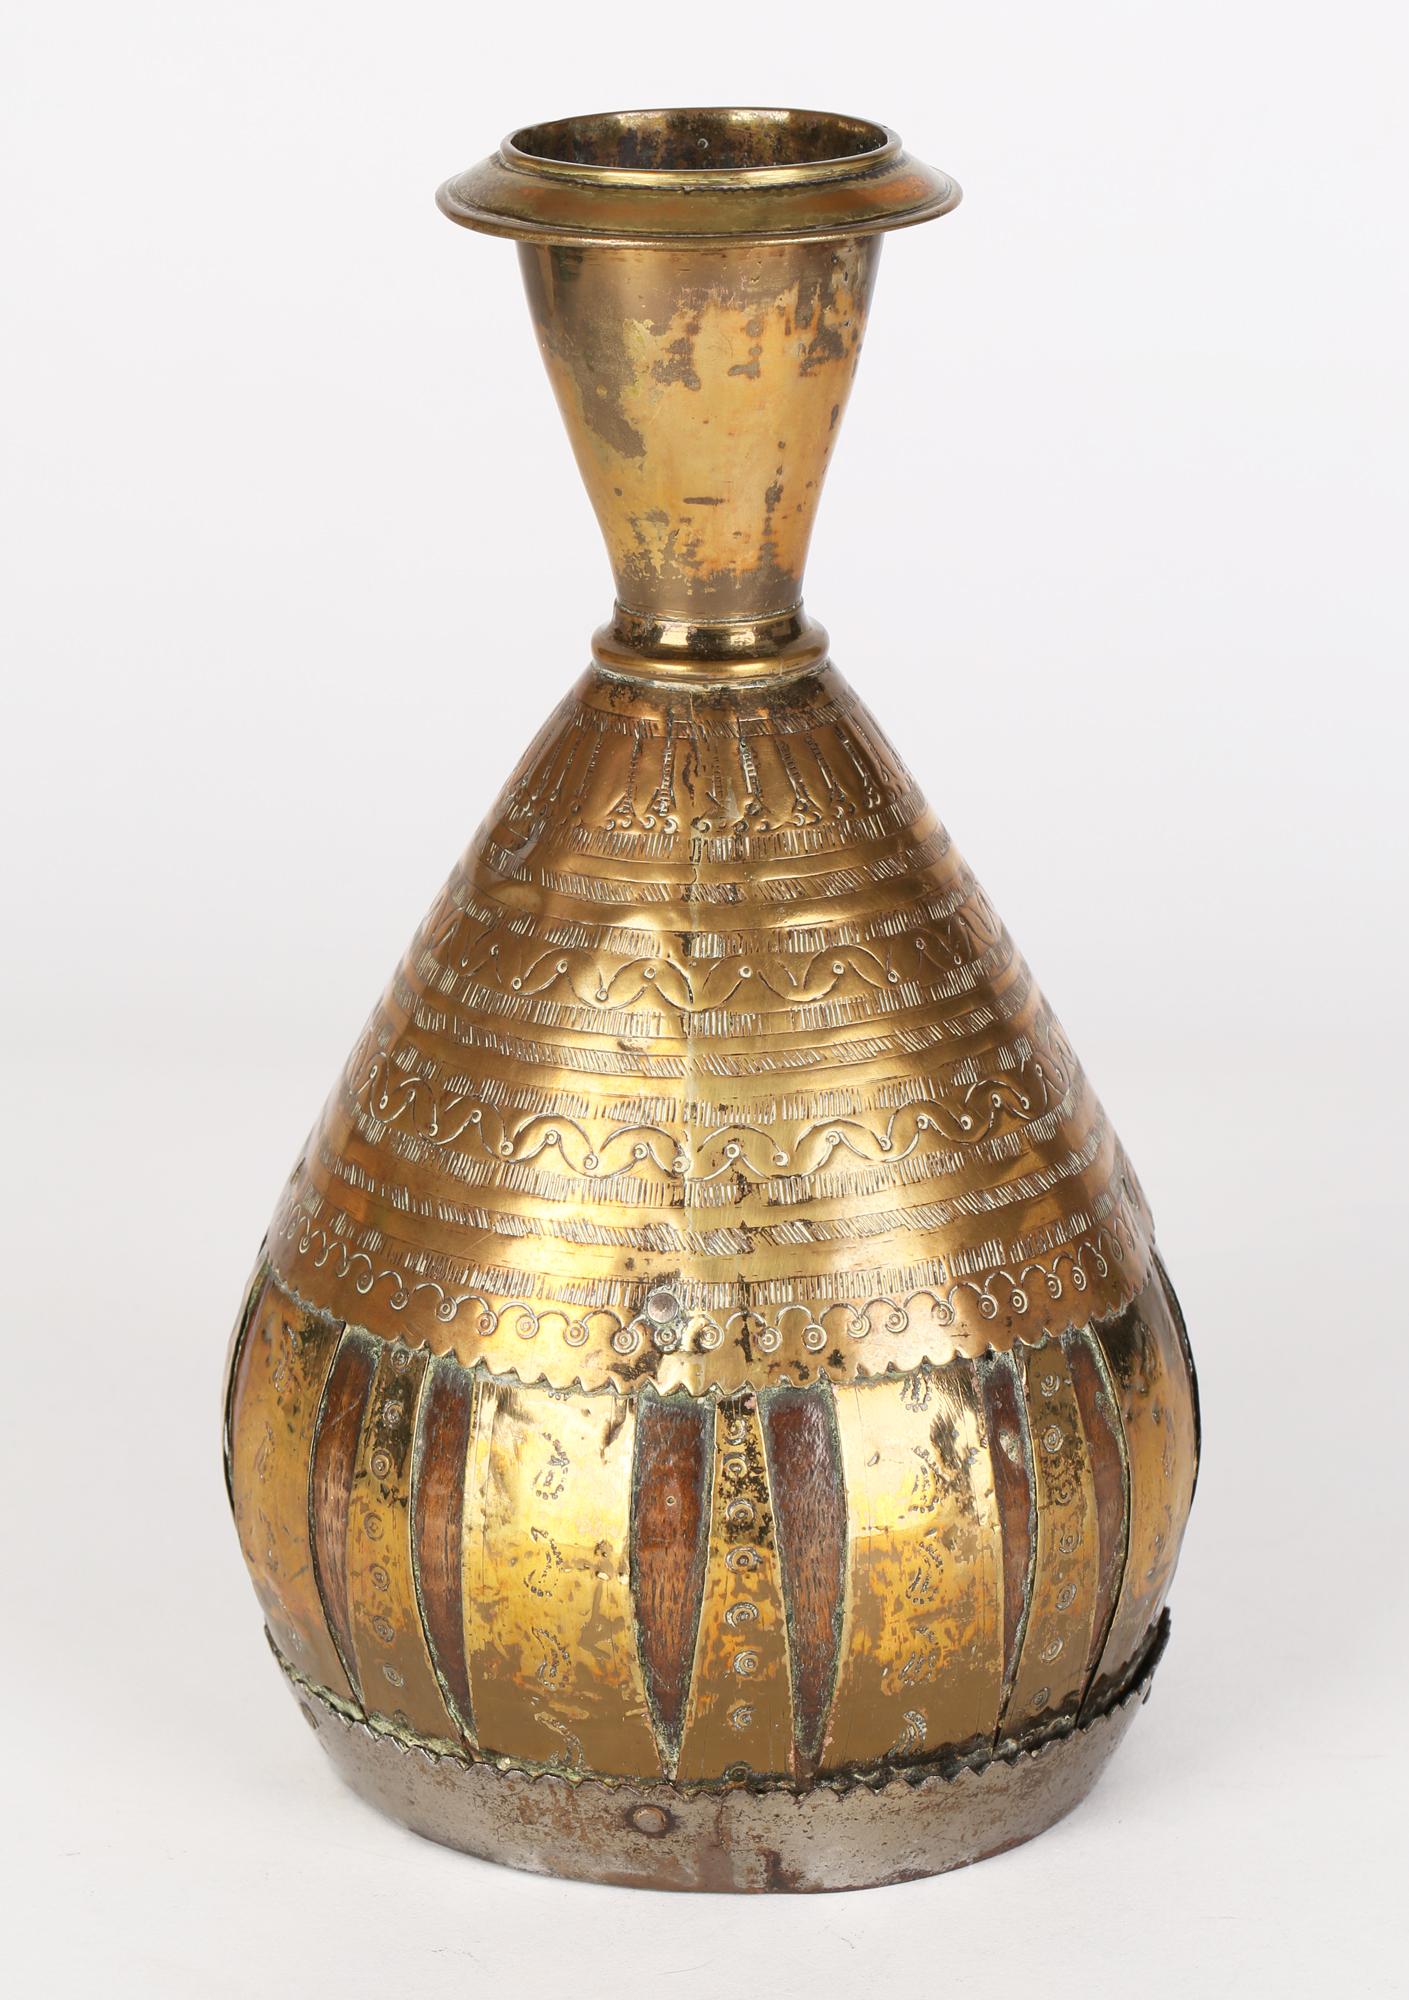 Un vase ancien en forme de noix de coco indienne ou du Moyen-Orient, tacheté et recouvert de laiton, datant du XIXe siècle. Le vase a un corps en forme de noix de coco avec une base en bois tourné insérée et est monté avec un corps supérieur en